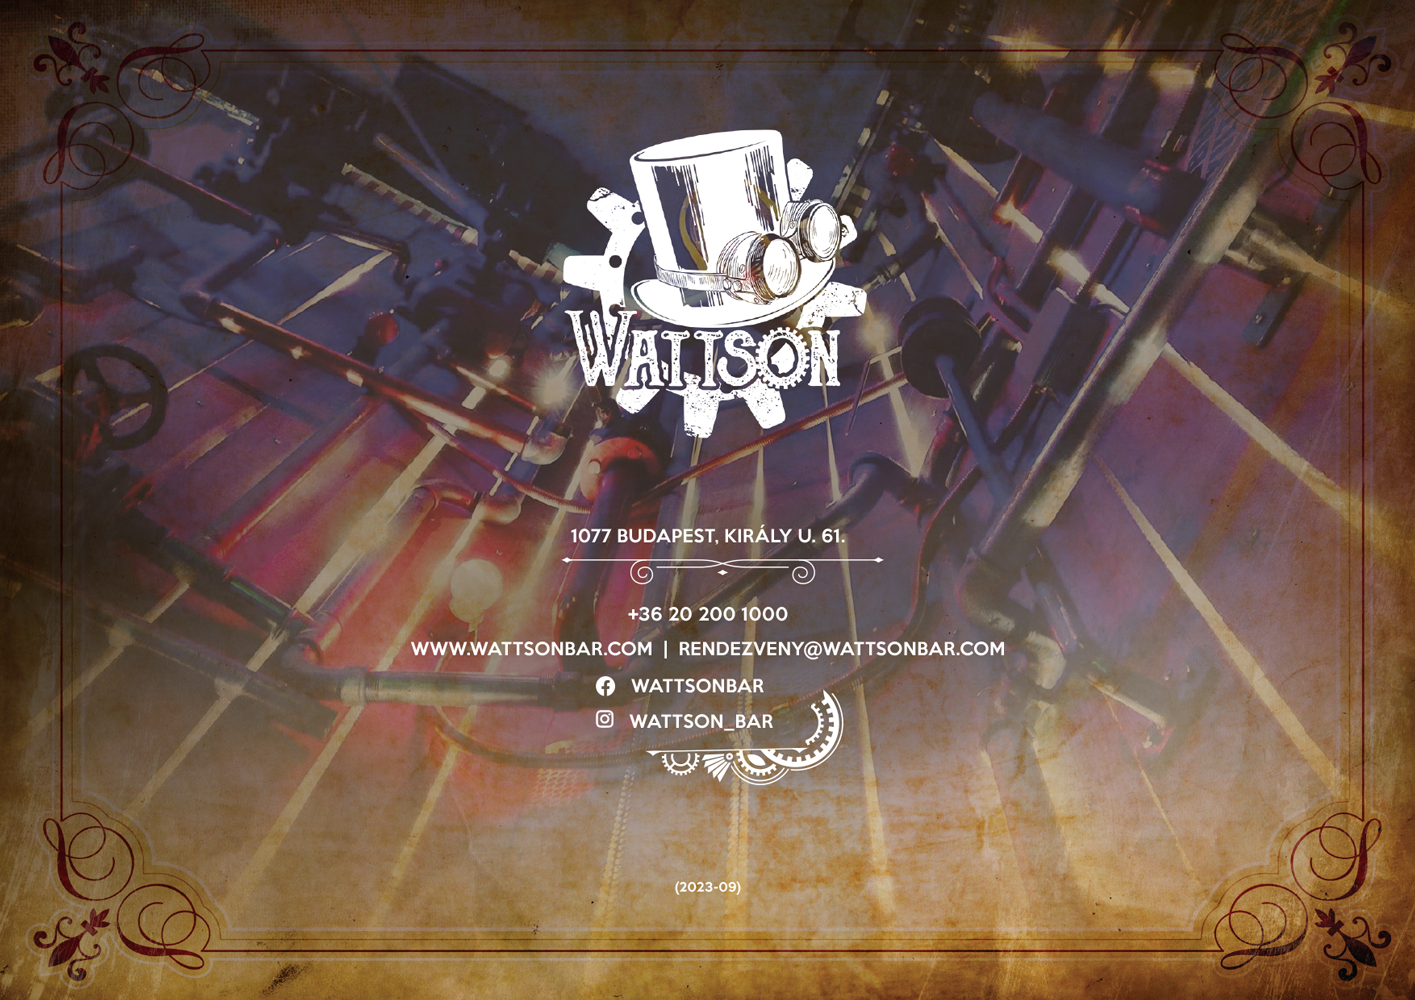 Wattson-kiajanlo-2023-09--fekvoA4--v6-6